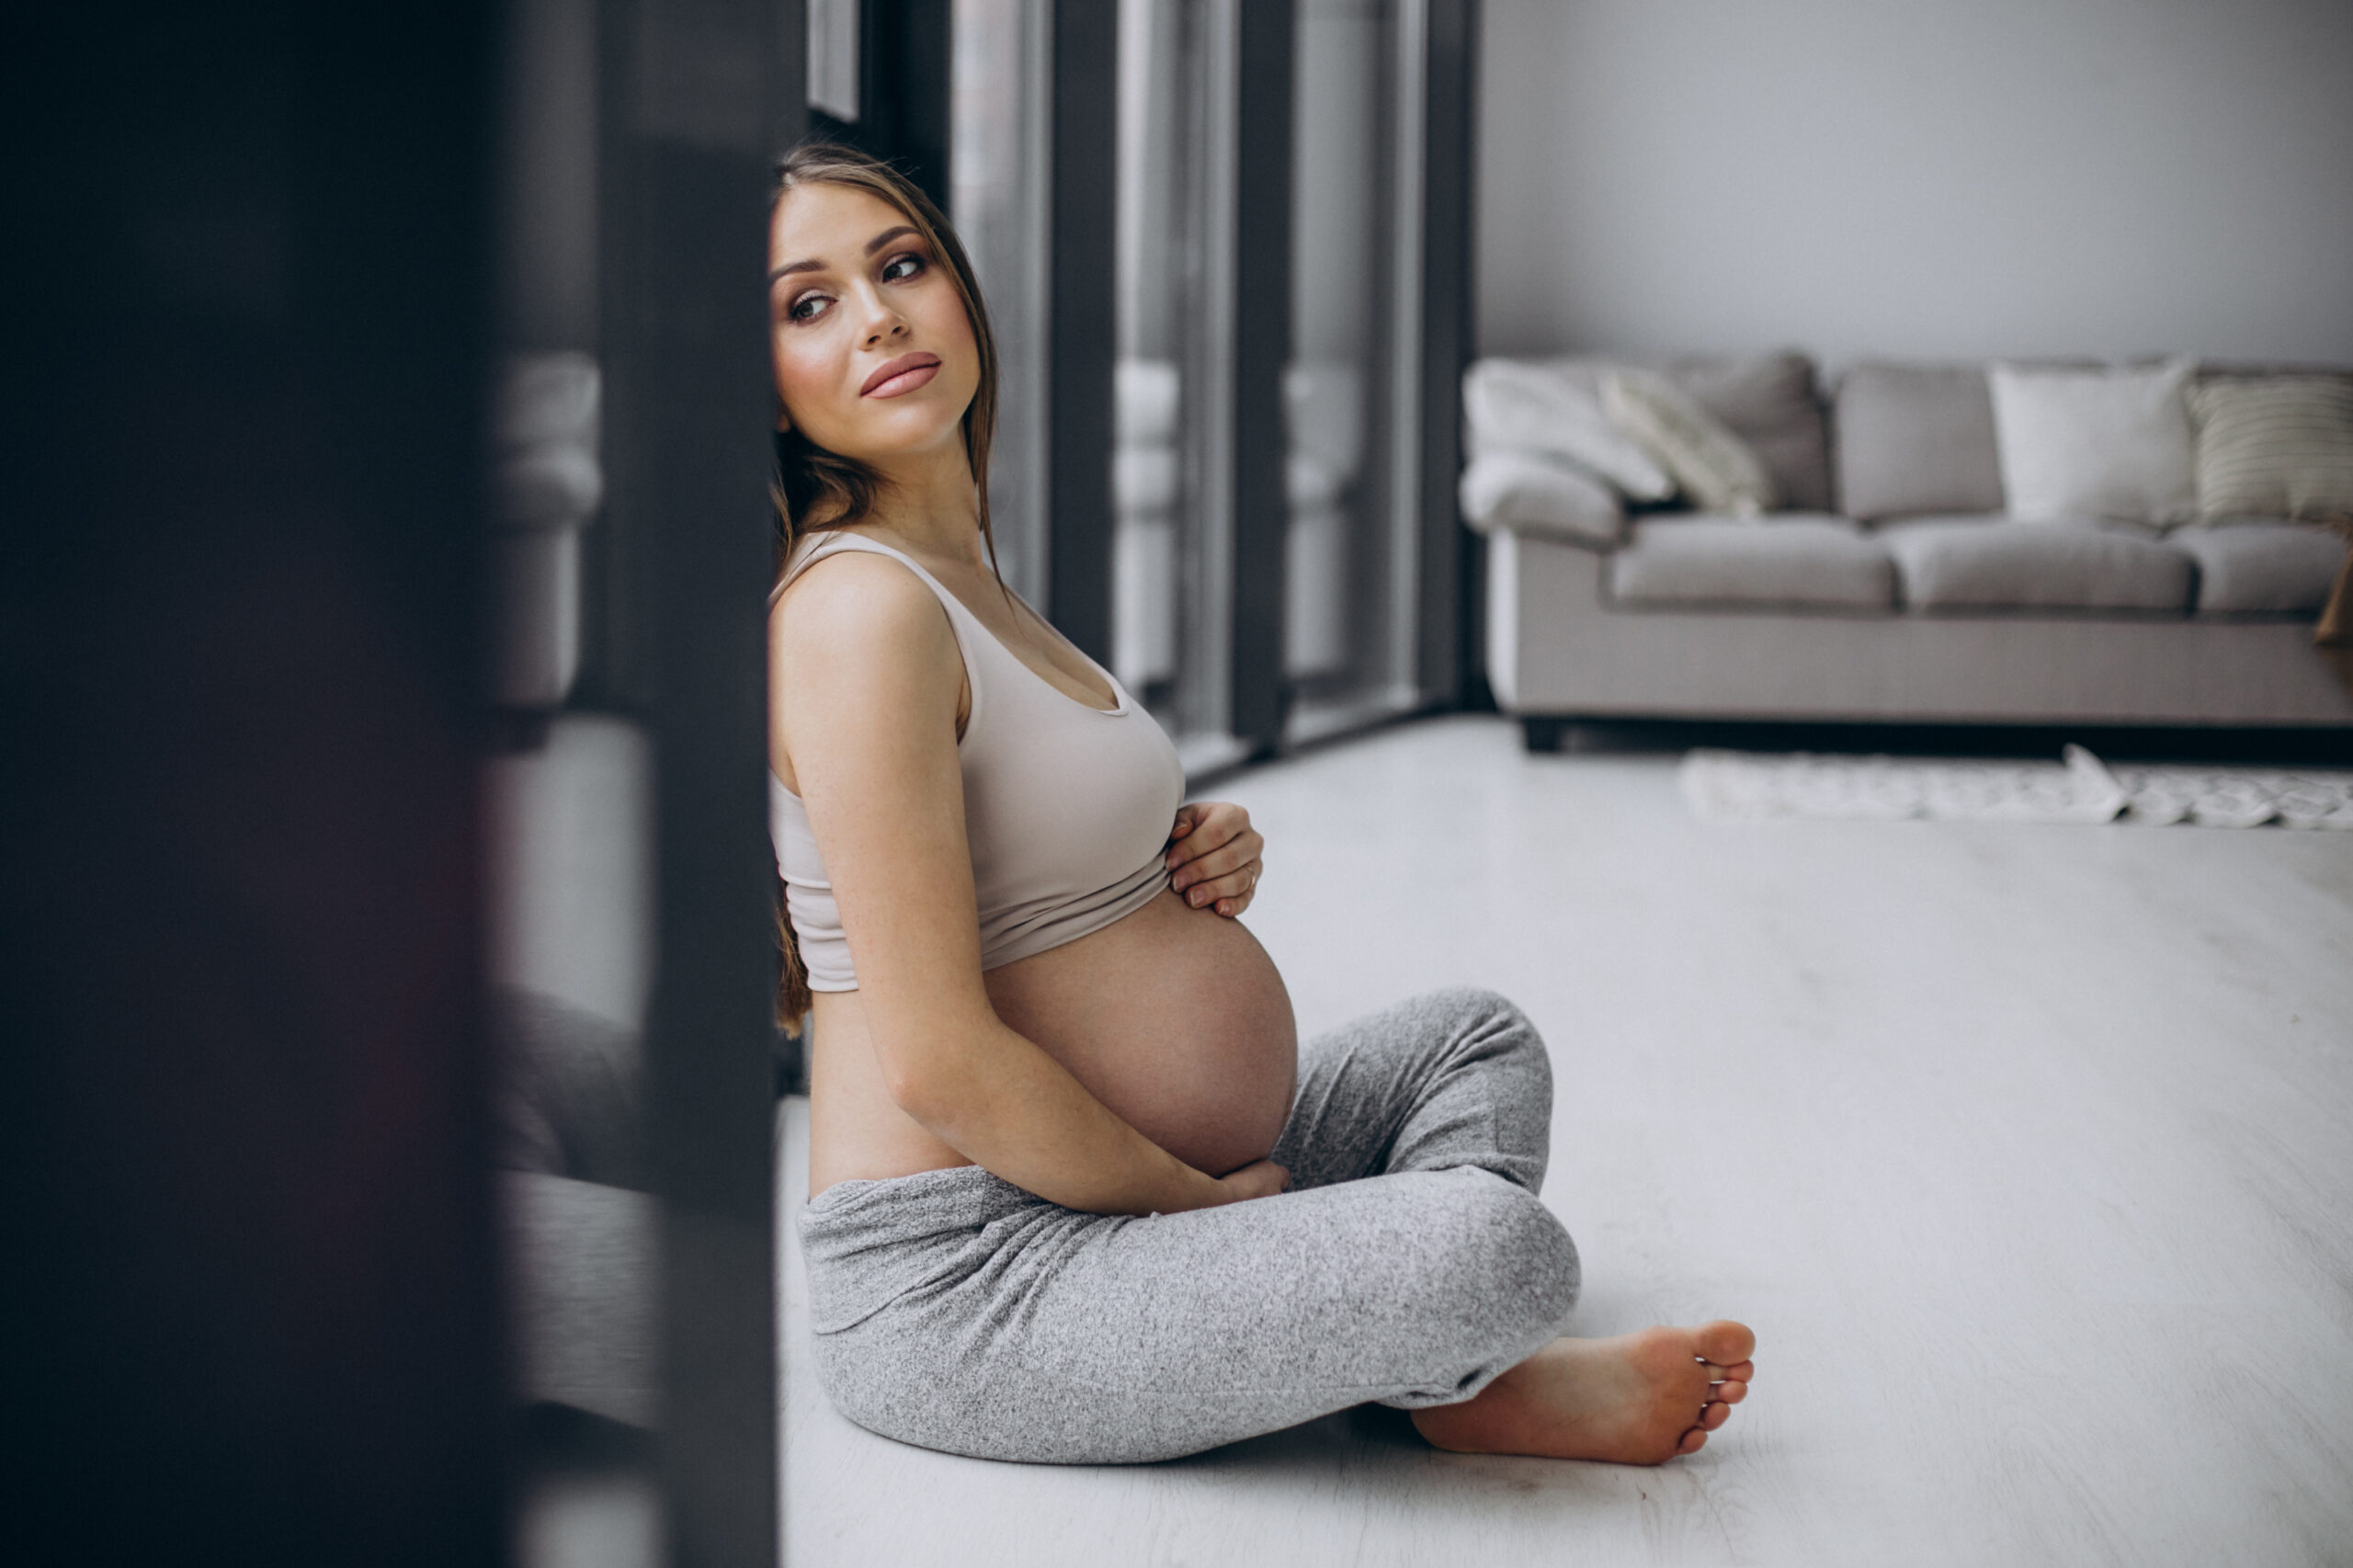 Khám thai định kỳ giúp mẹ theo dõi được tình hình sức khỏe của cả mẹ và bé